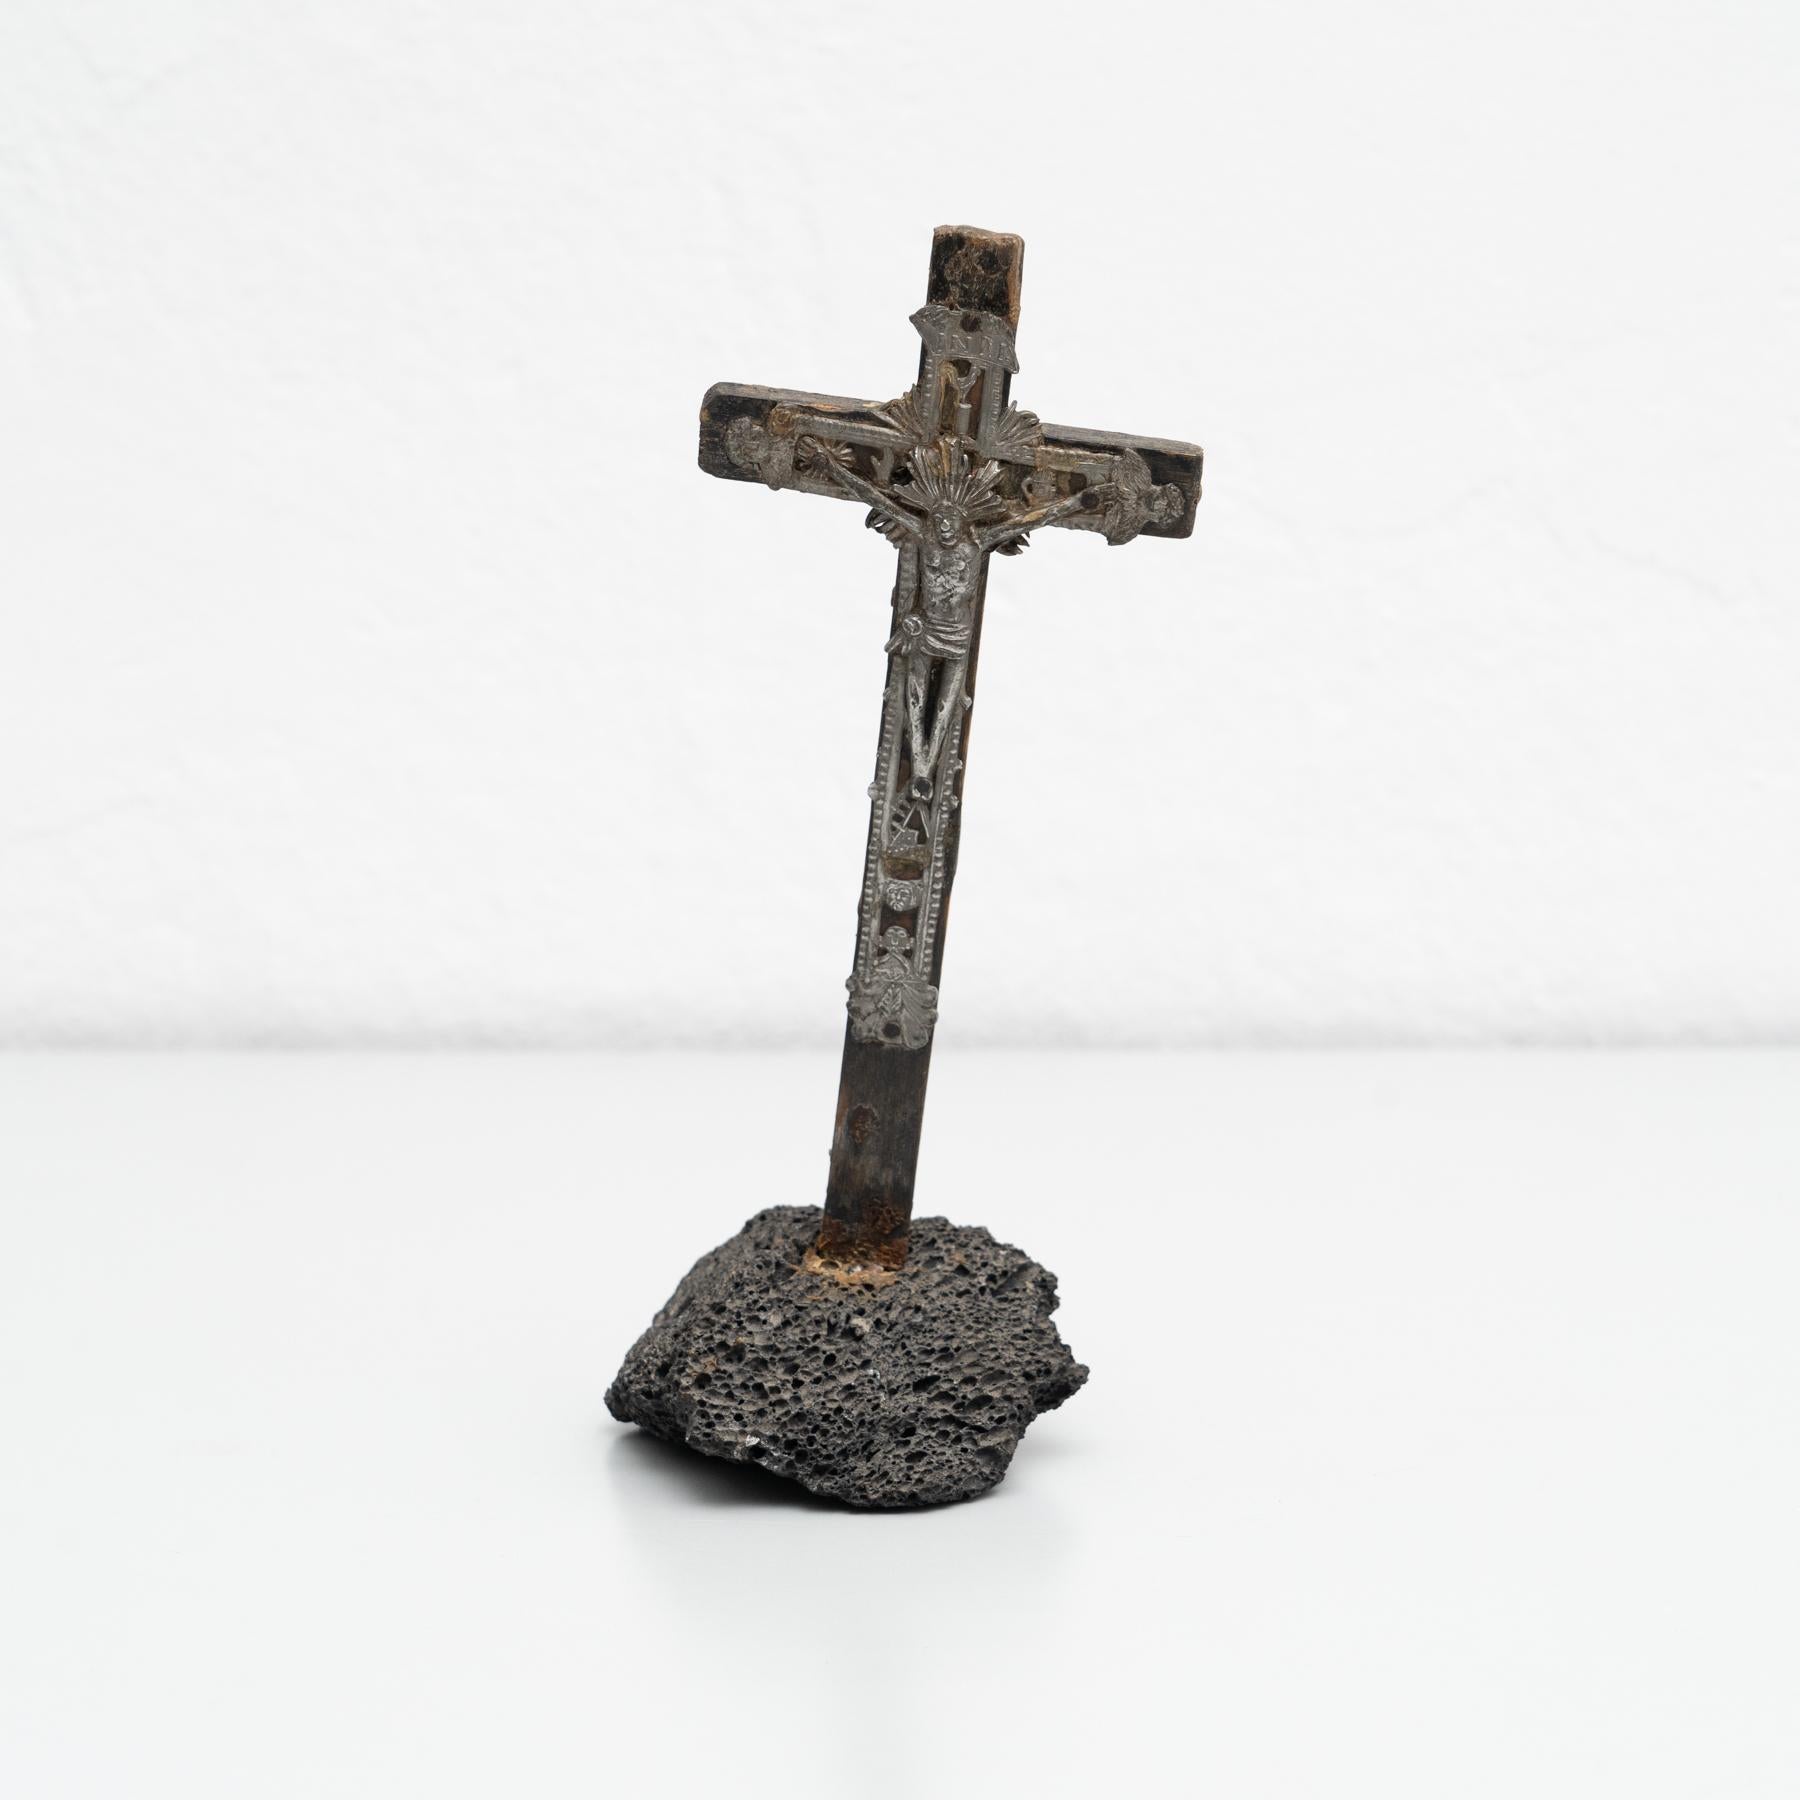 Jesus im Kreuz Metall-Souvenir.

Hergestellt in Frankreich, um 1950.

Originaler Zustand mit geringen alters- und gebrauchsbedingten Abnutzungserscheinungen, der eine schöne Patina aufweist.

MATERIALIEN:
Metall.
 